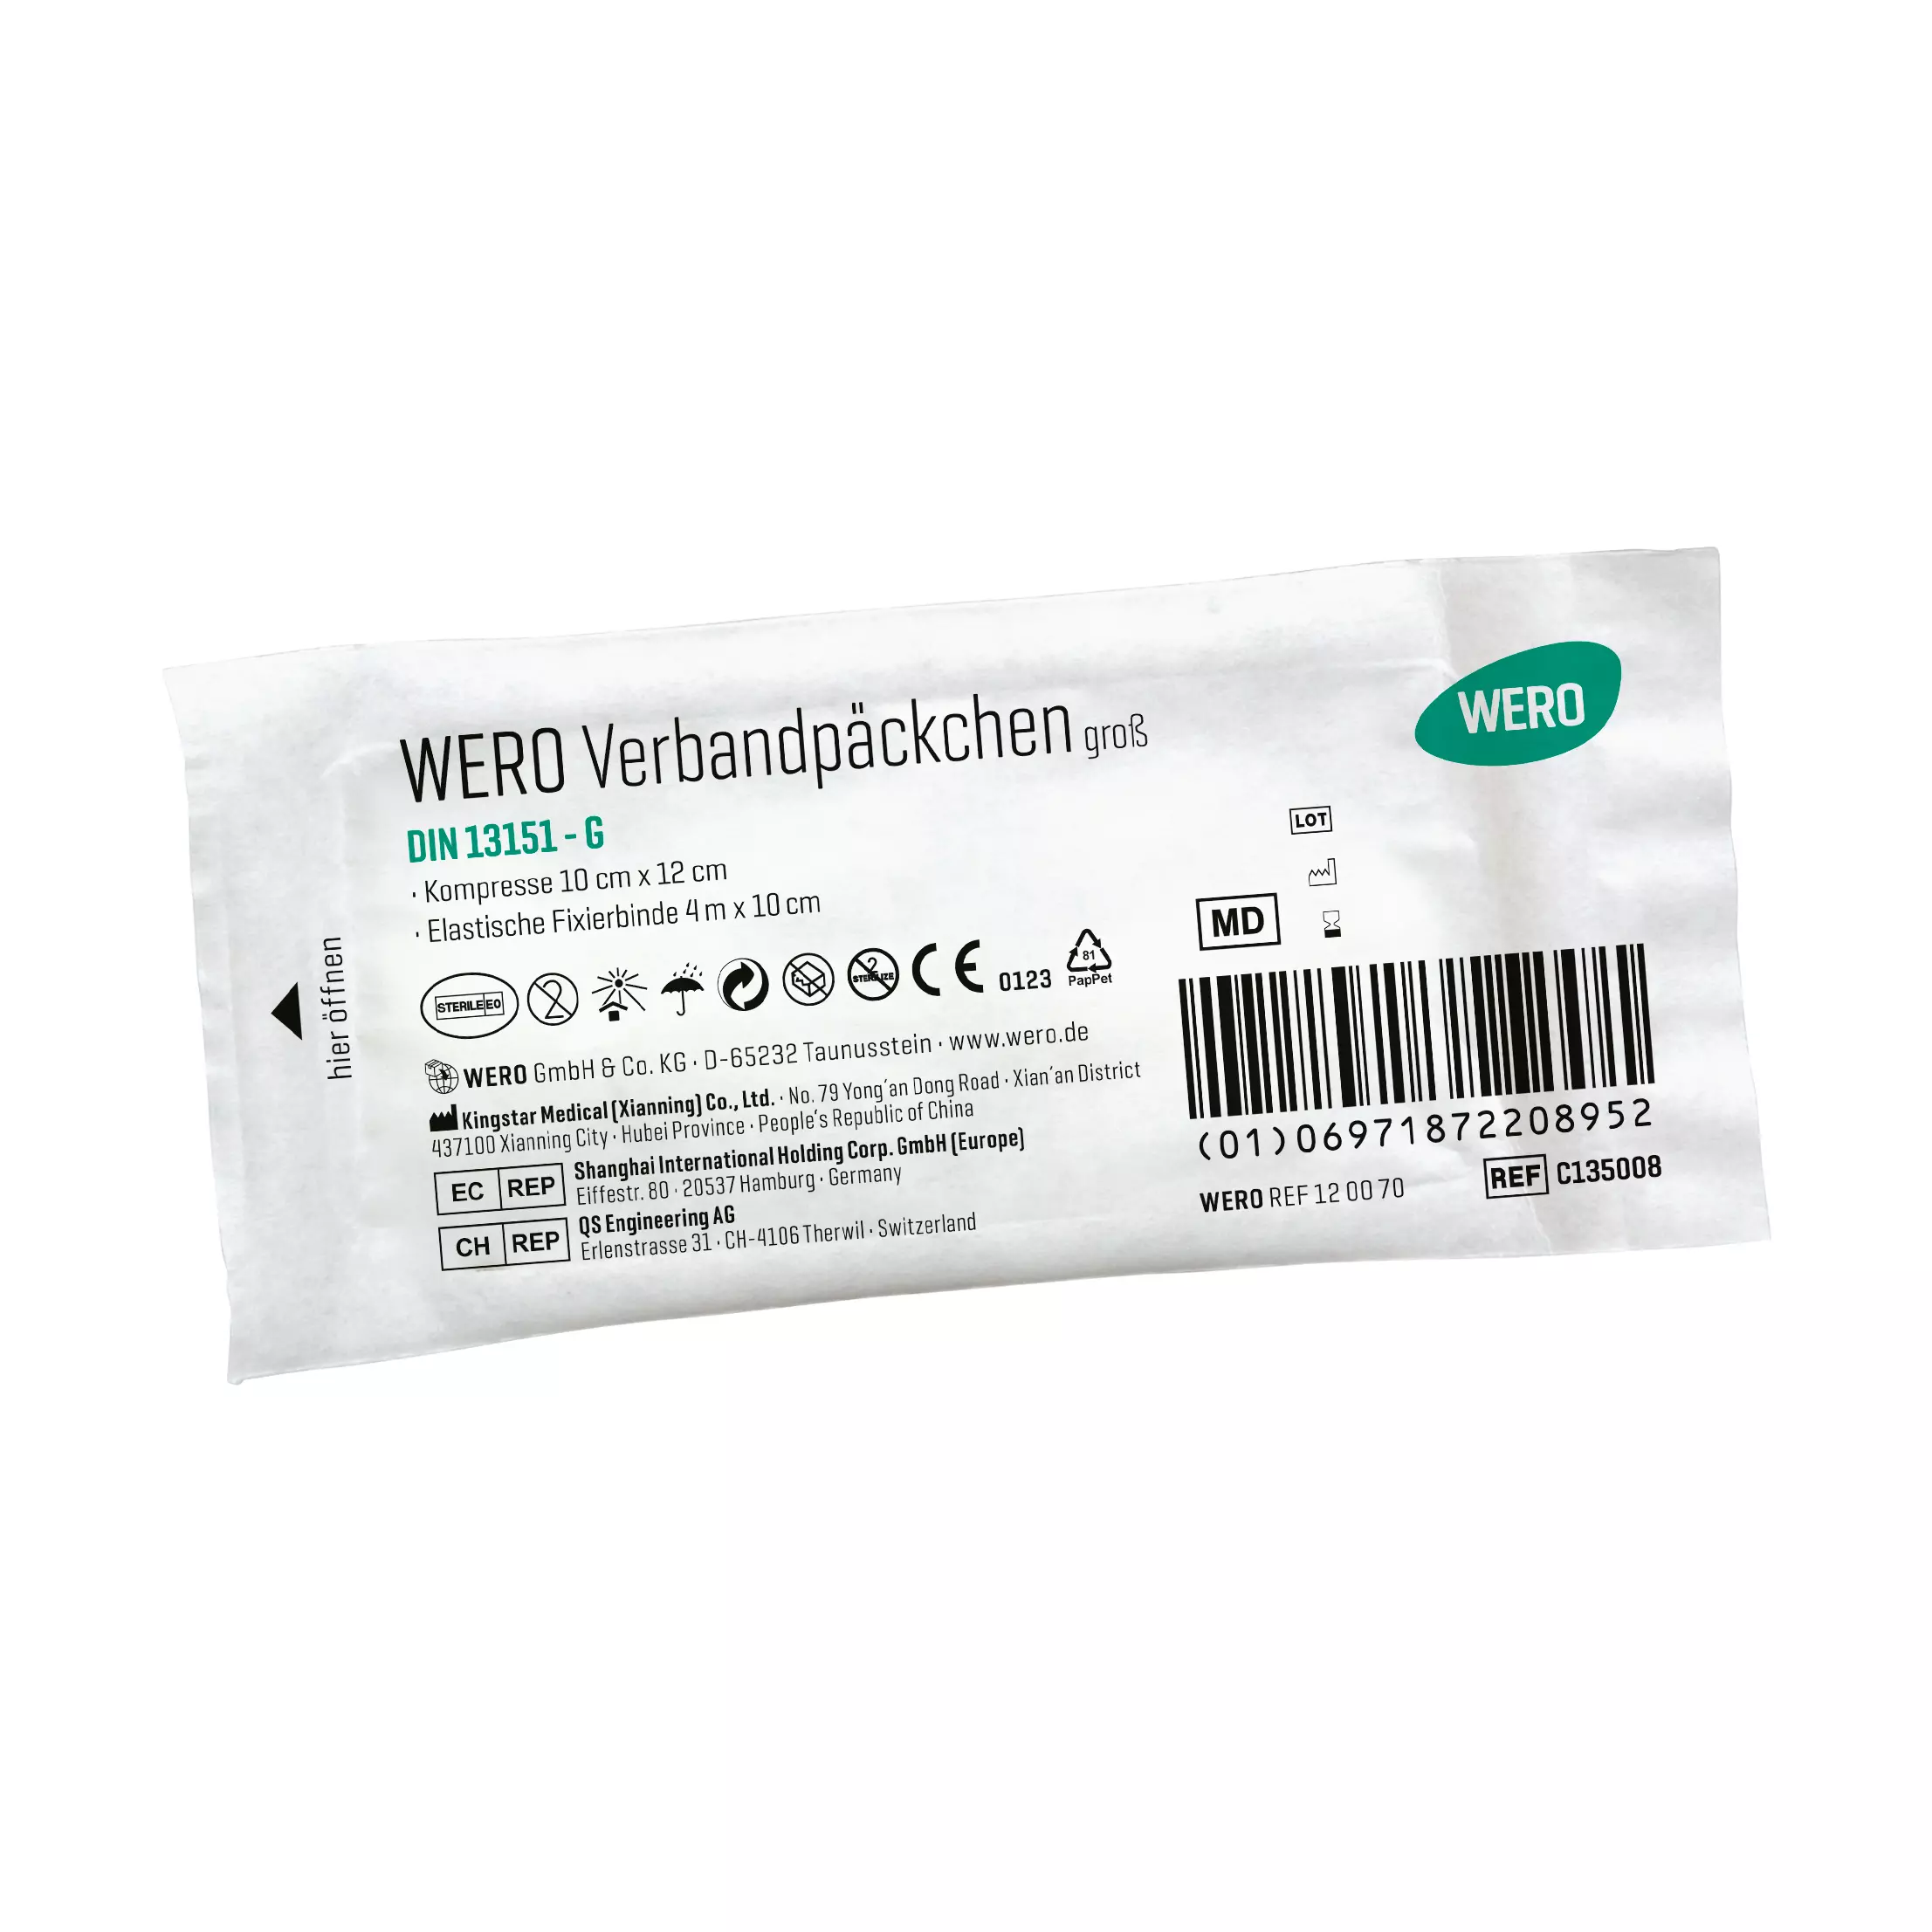 WERO Verbandpäckchen DIN 13151 G, steril - 1 Stk